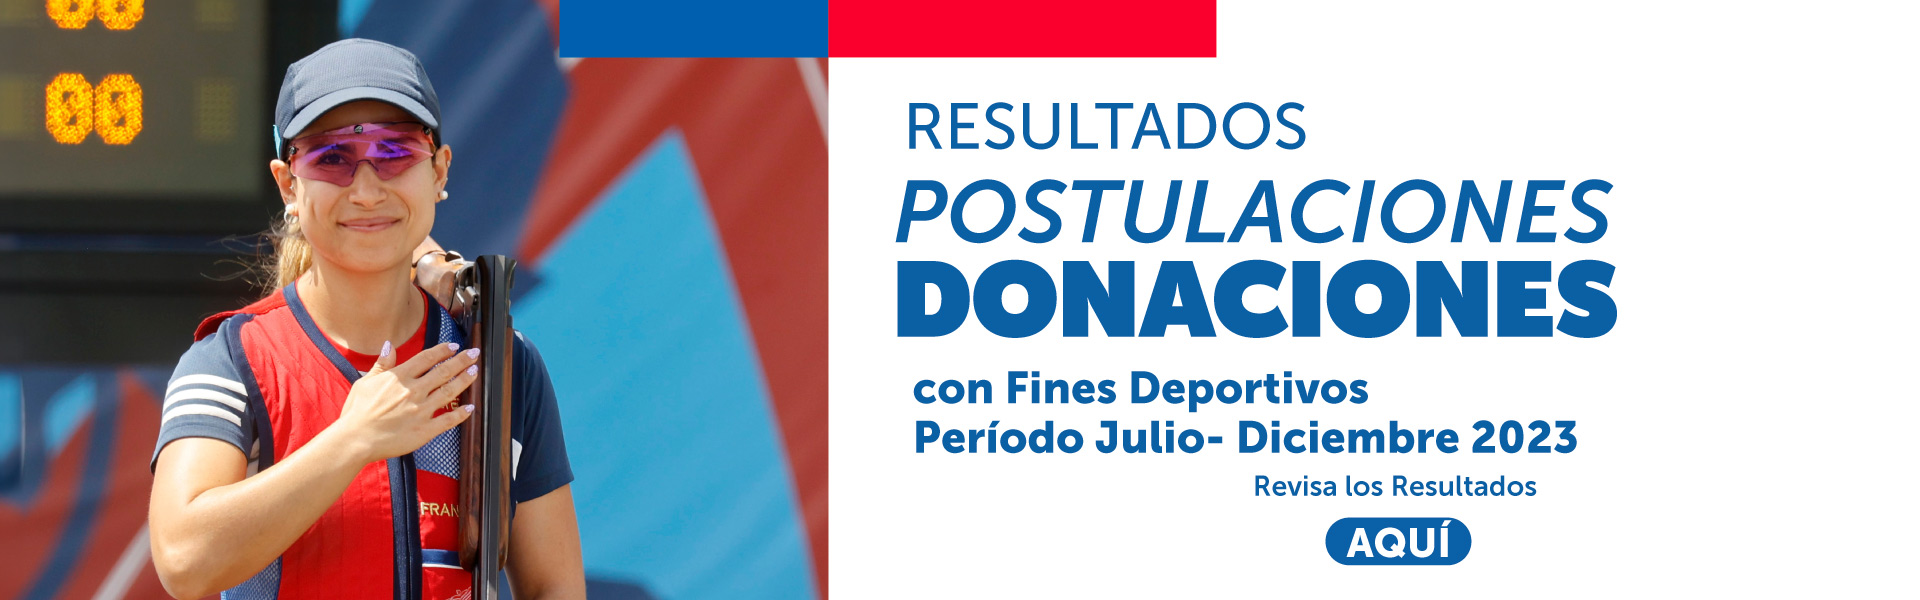 Resultados postulaciones donaciones para Fines Deportivos segundo semestre 2023.